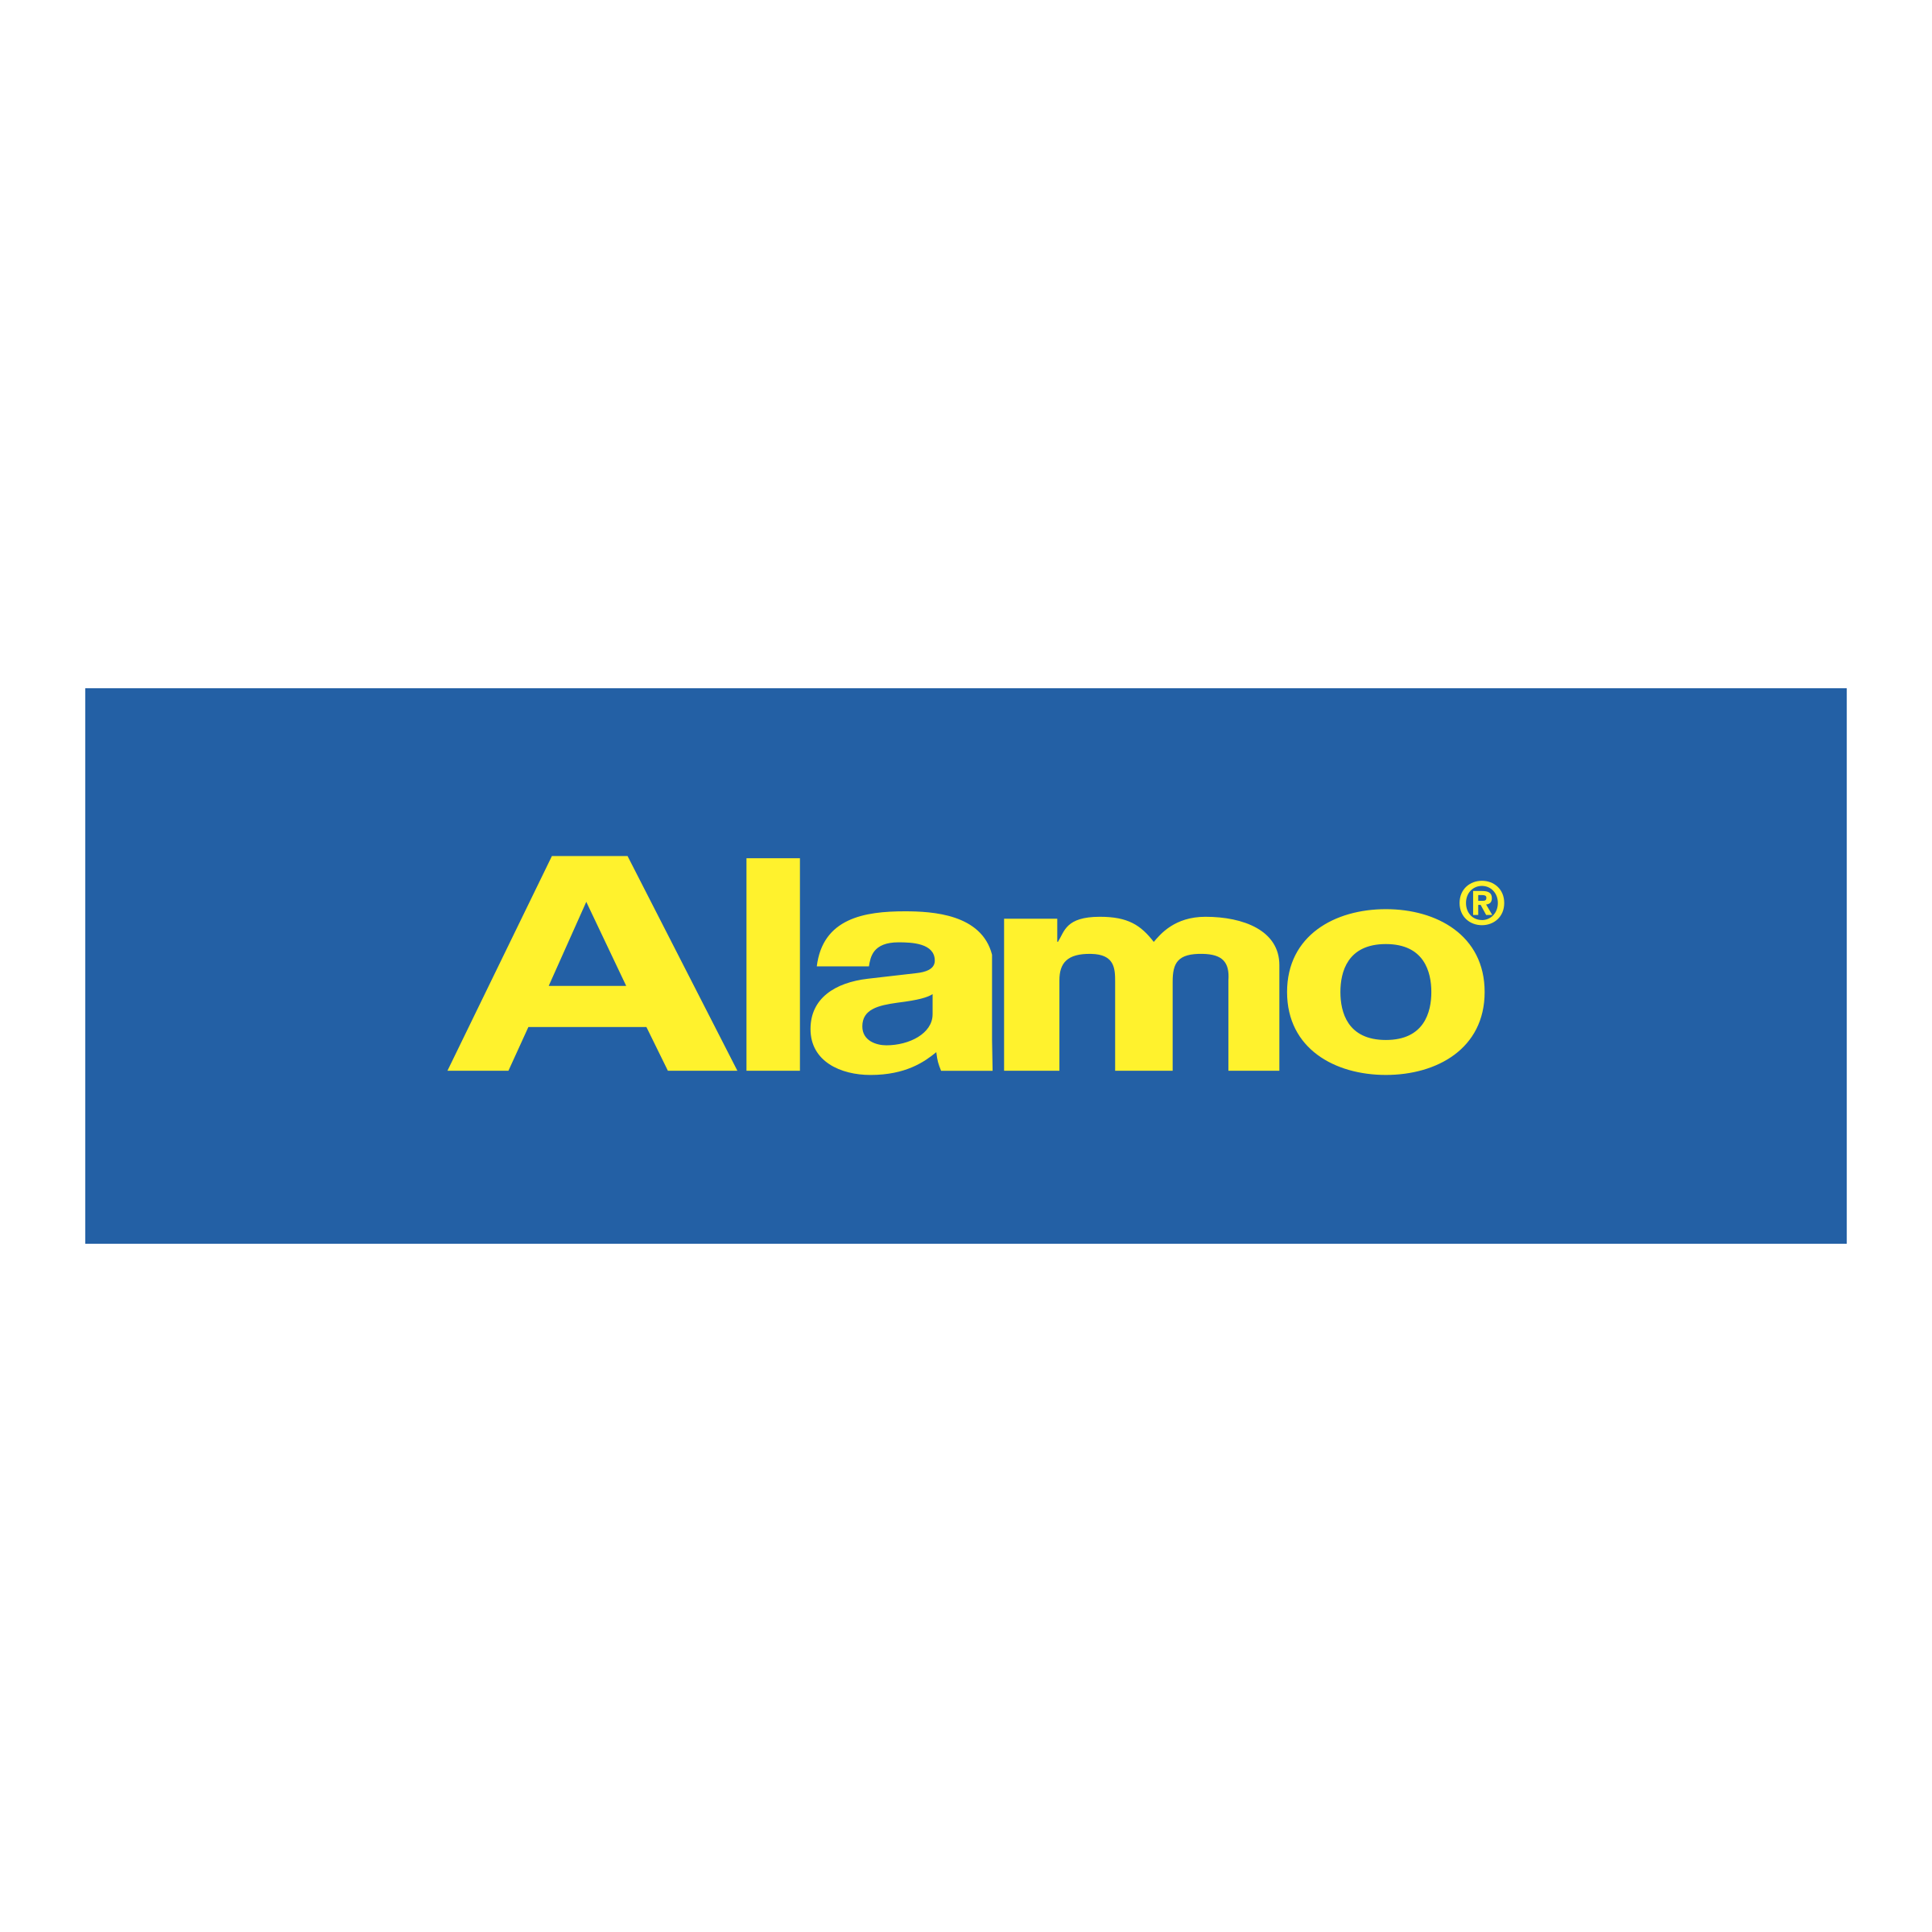 Alamo Logo - Alamo Logo PNG Transparent & SVG Vector